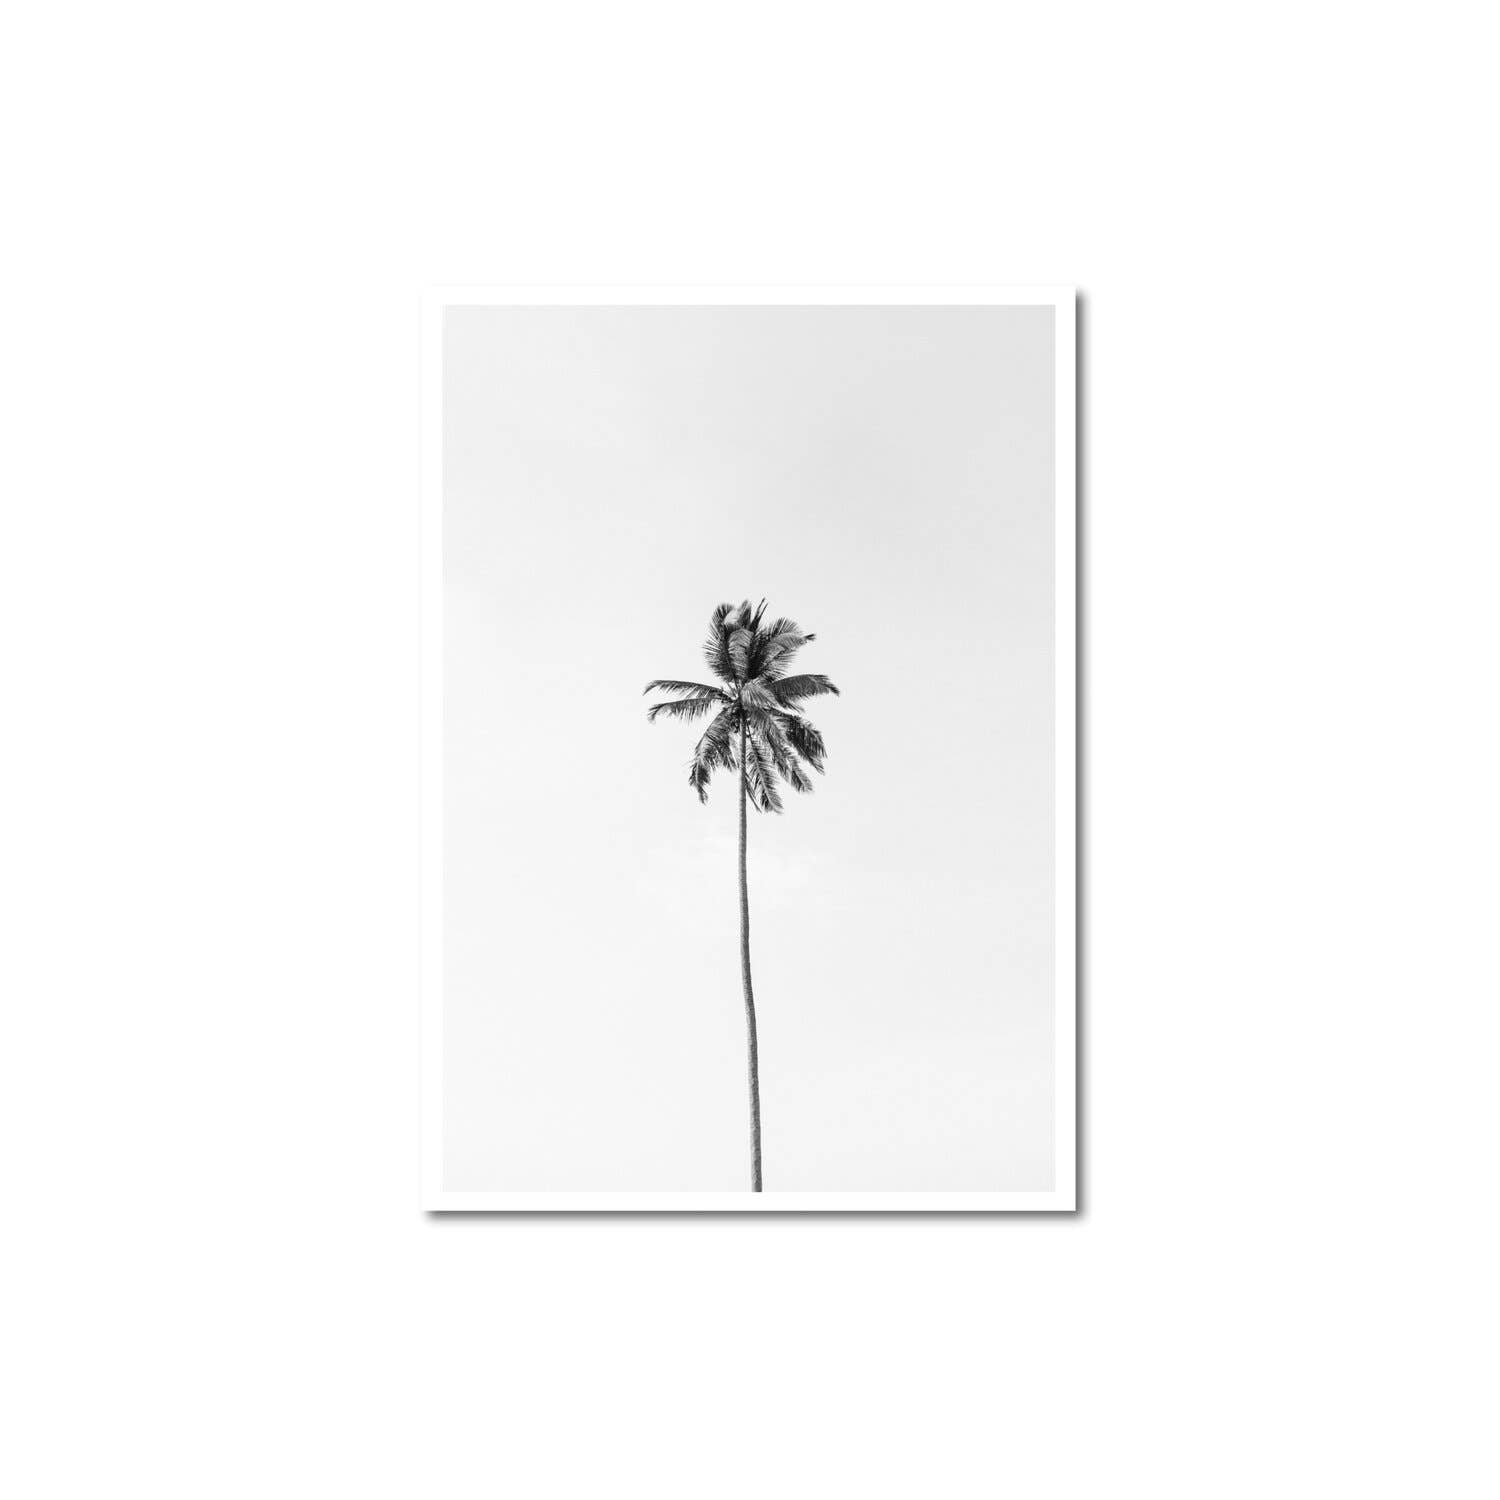 Peechy - B&W Palm Tree Print